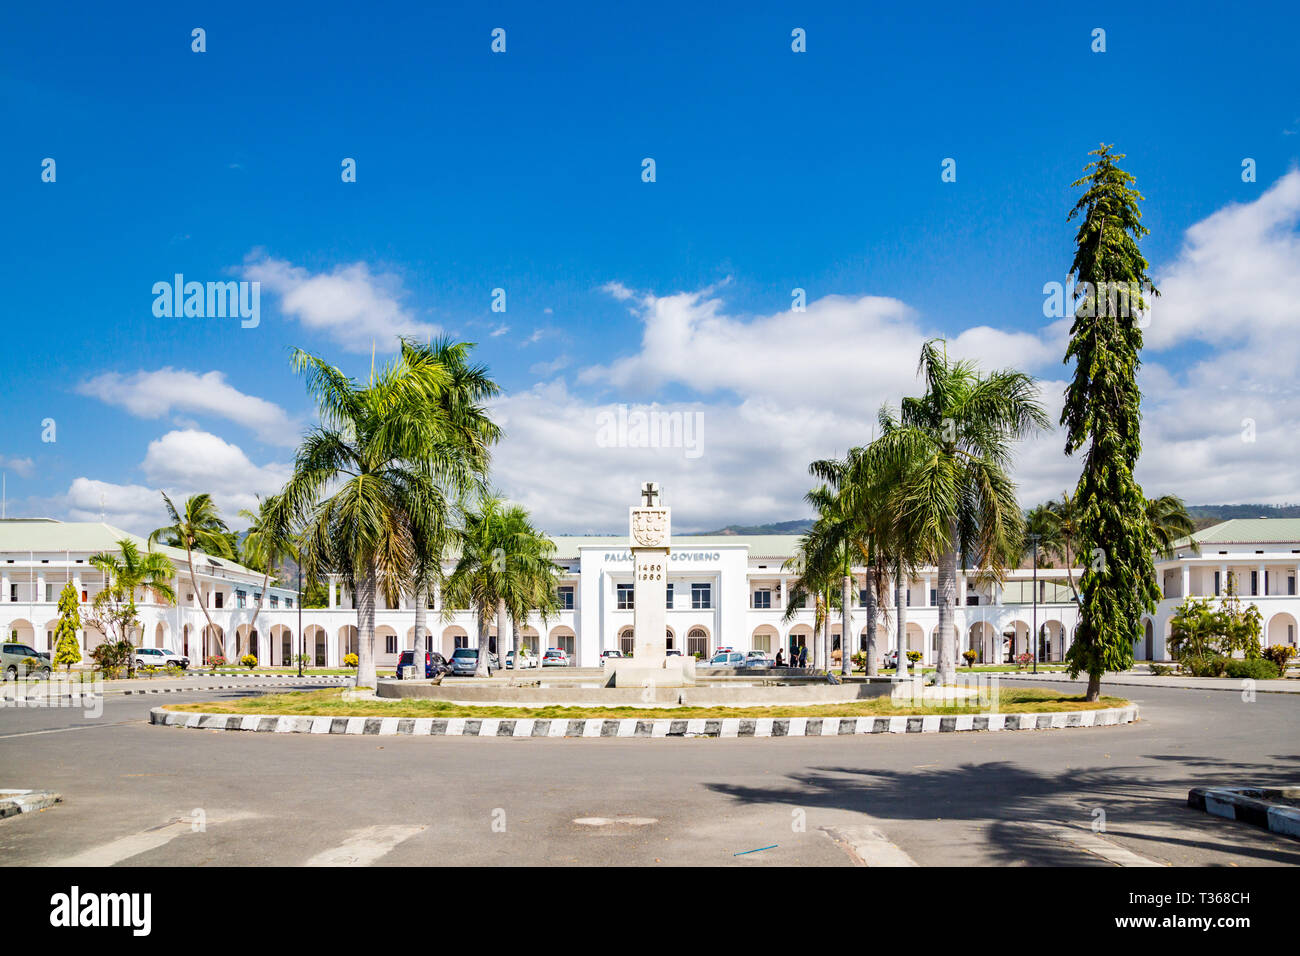 Dili, East Timor - Aug 10 2015: Palacio do Governo de Timor-Leste. Government's palace of East Timor. Stock Photo